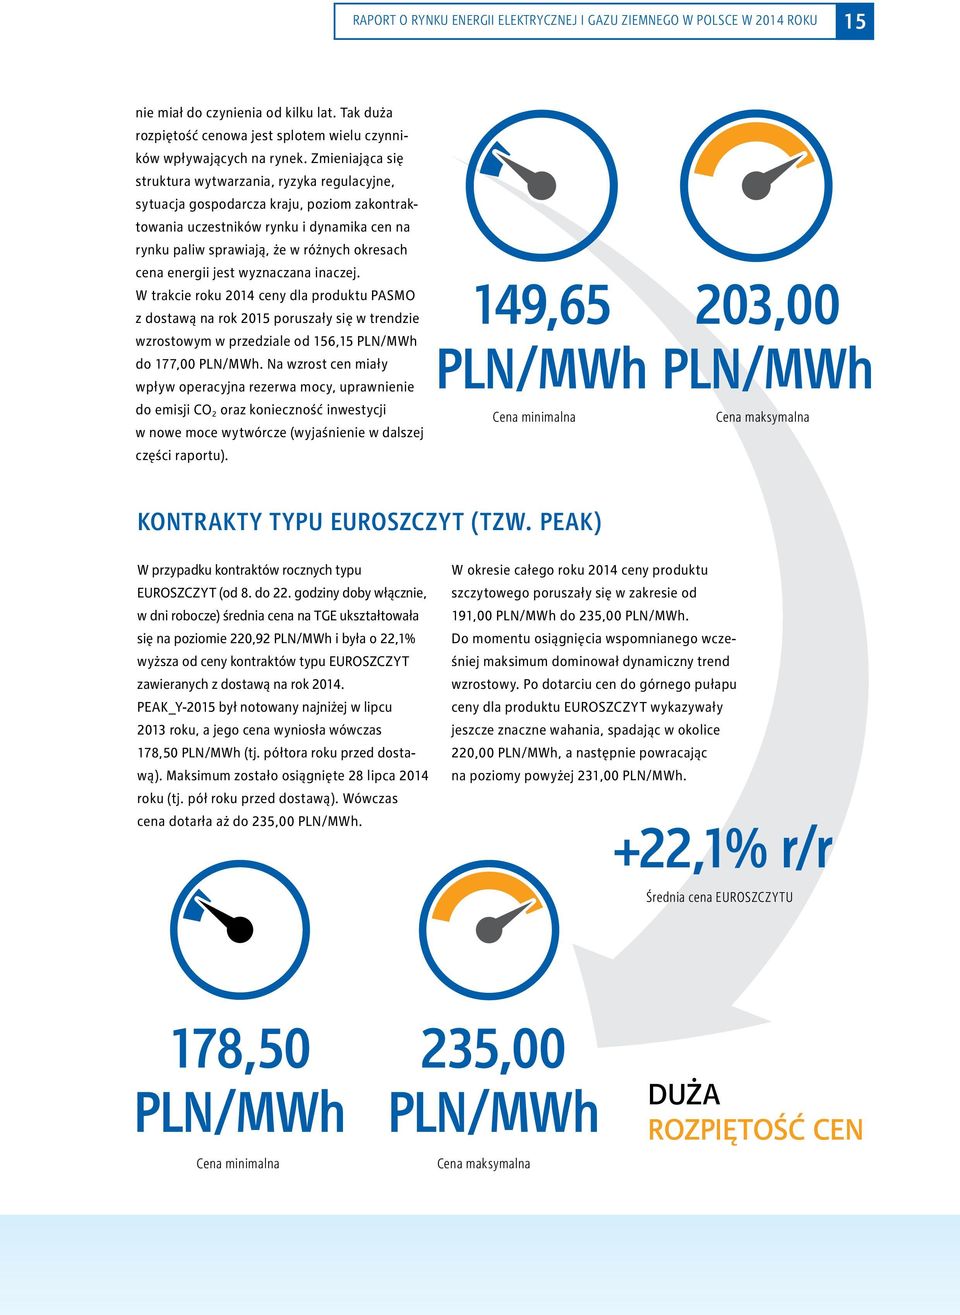 energii jest wyznaczana inaczej. W trakcie roku 2014 ceny dla produktu PASMO z dostawą na rok 2015 poruszały się w trendzie wzrostowym w przedziale od 156,15 PLN/MWh do 177,00 PLN/MWh.